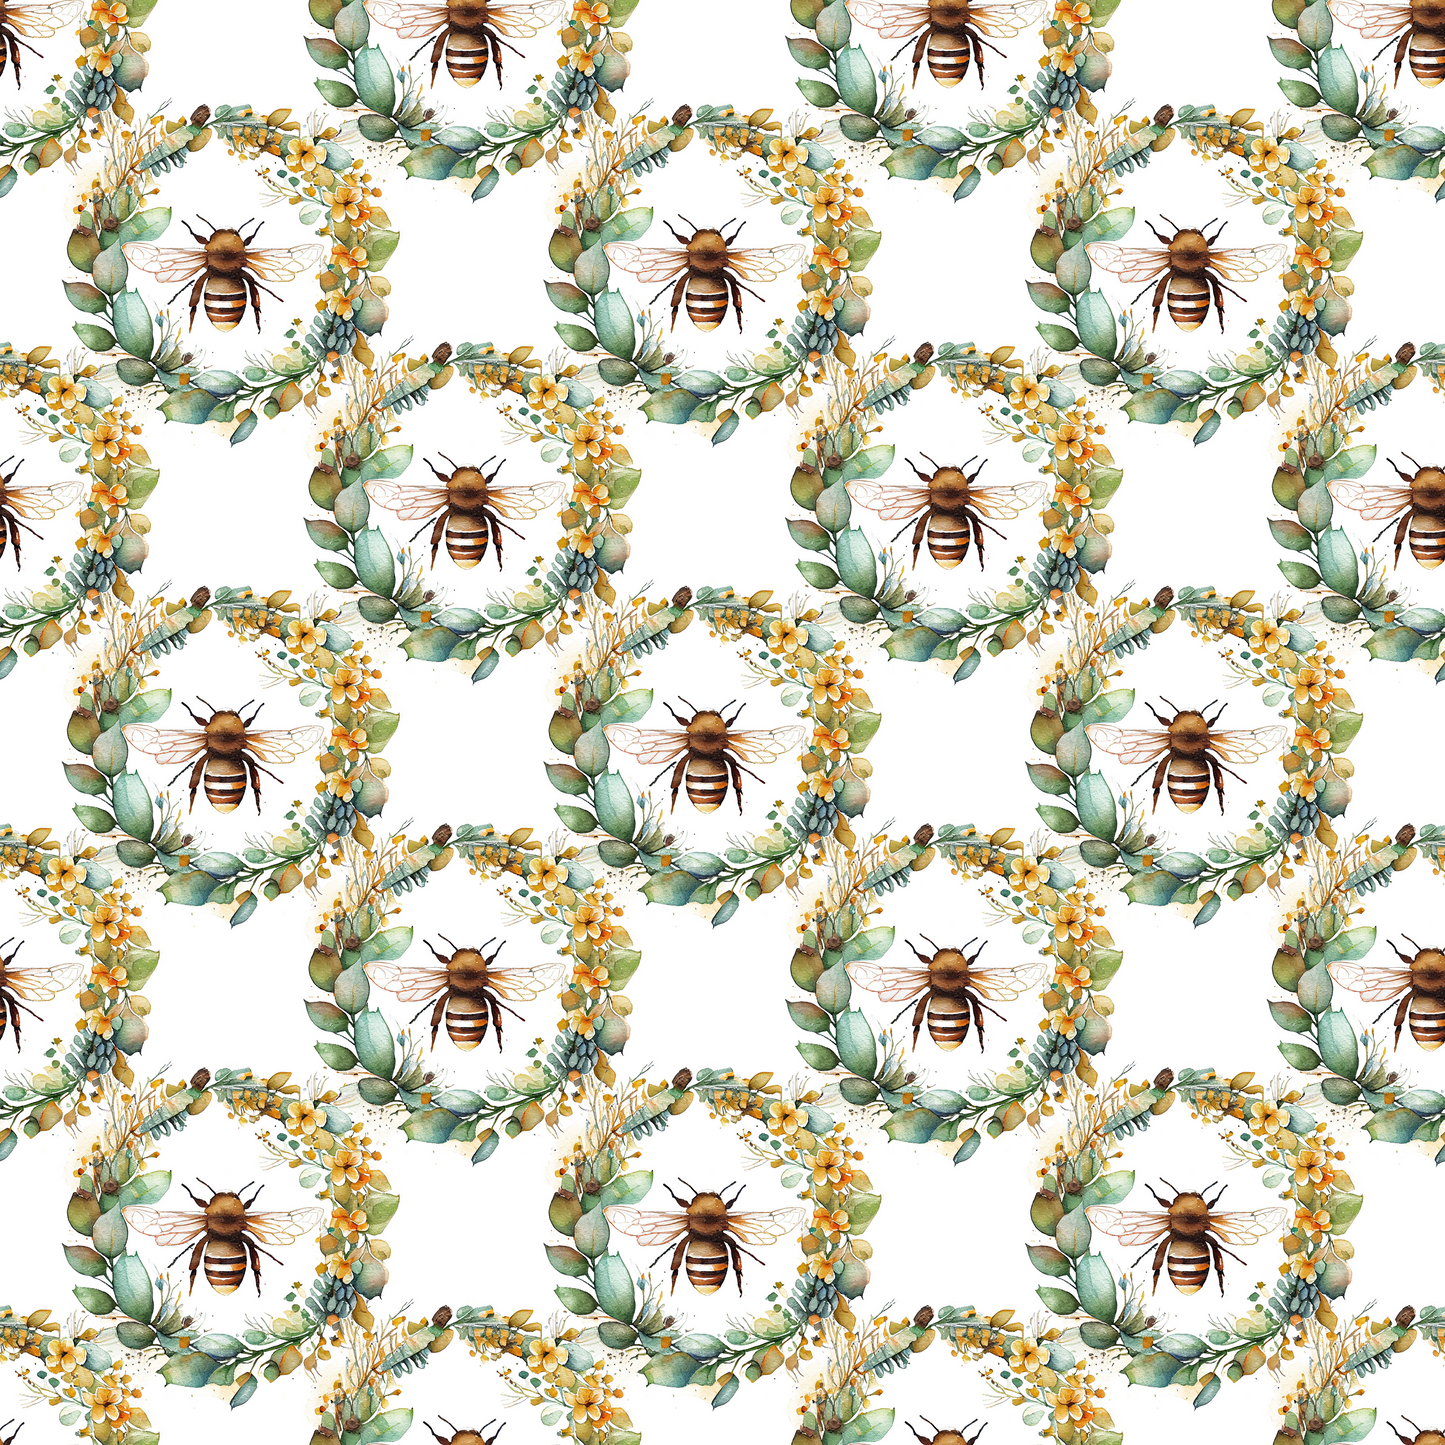 Queen bee cotton woven